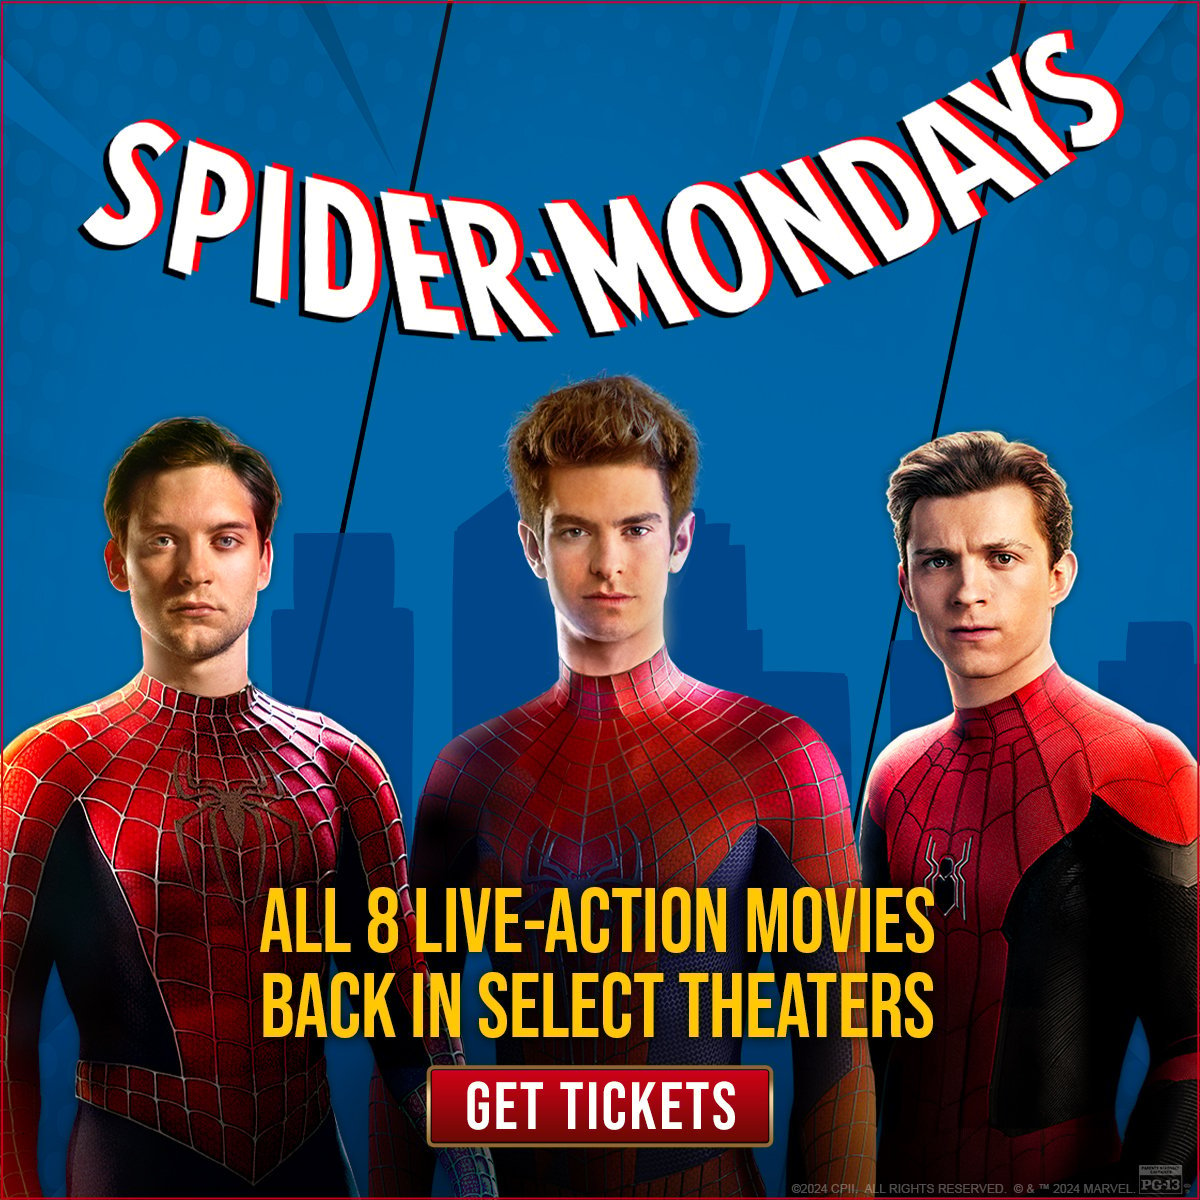 Spider-Mondays